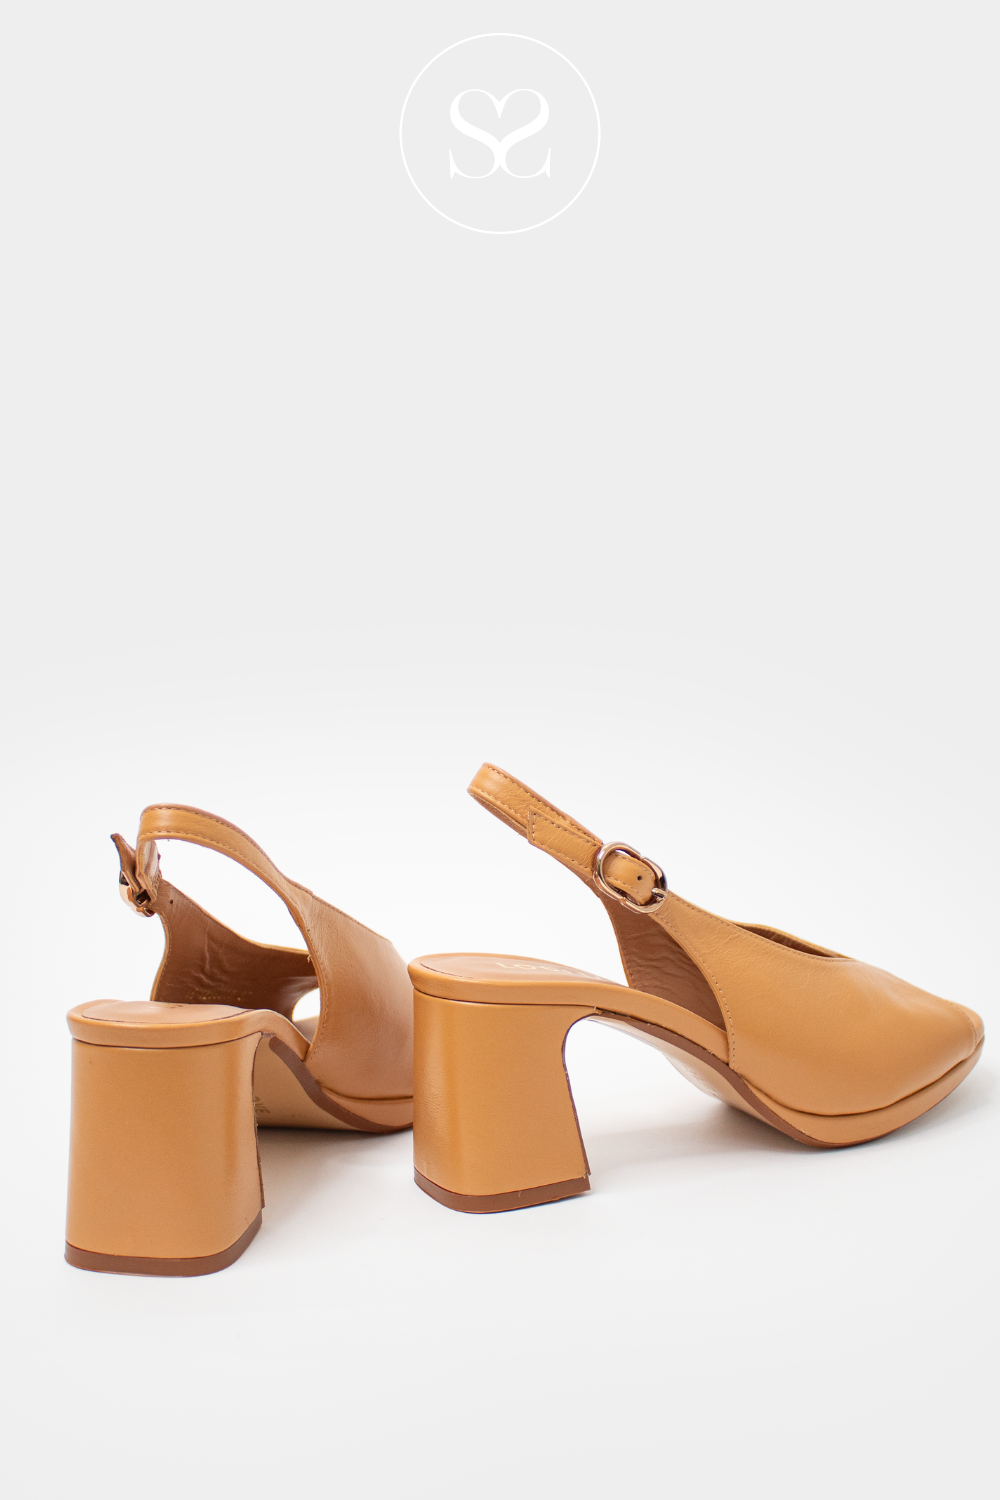 lodi jib4204 slingback heels in camel leather